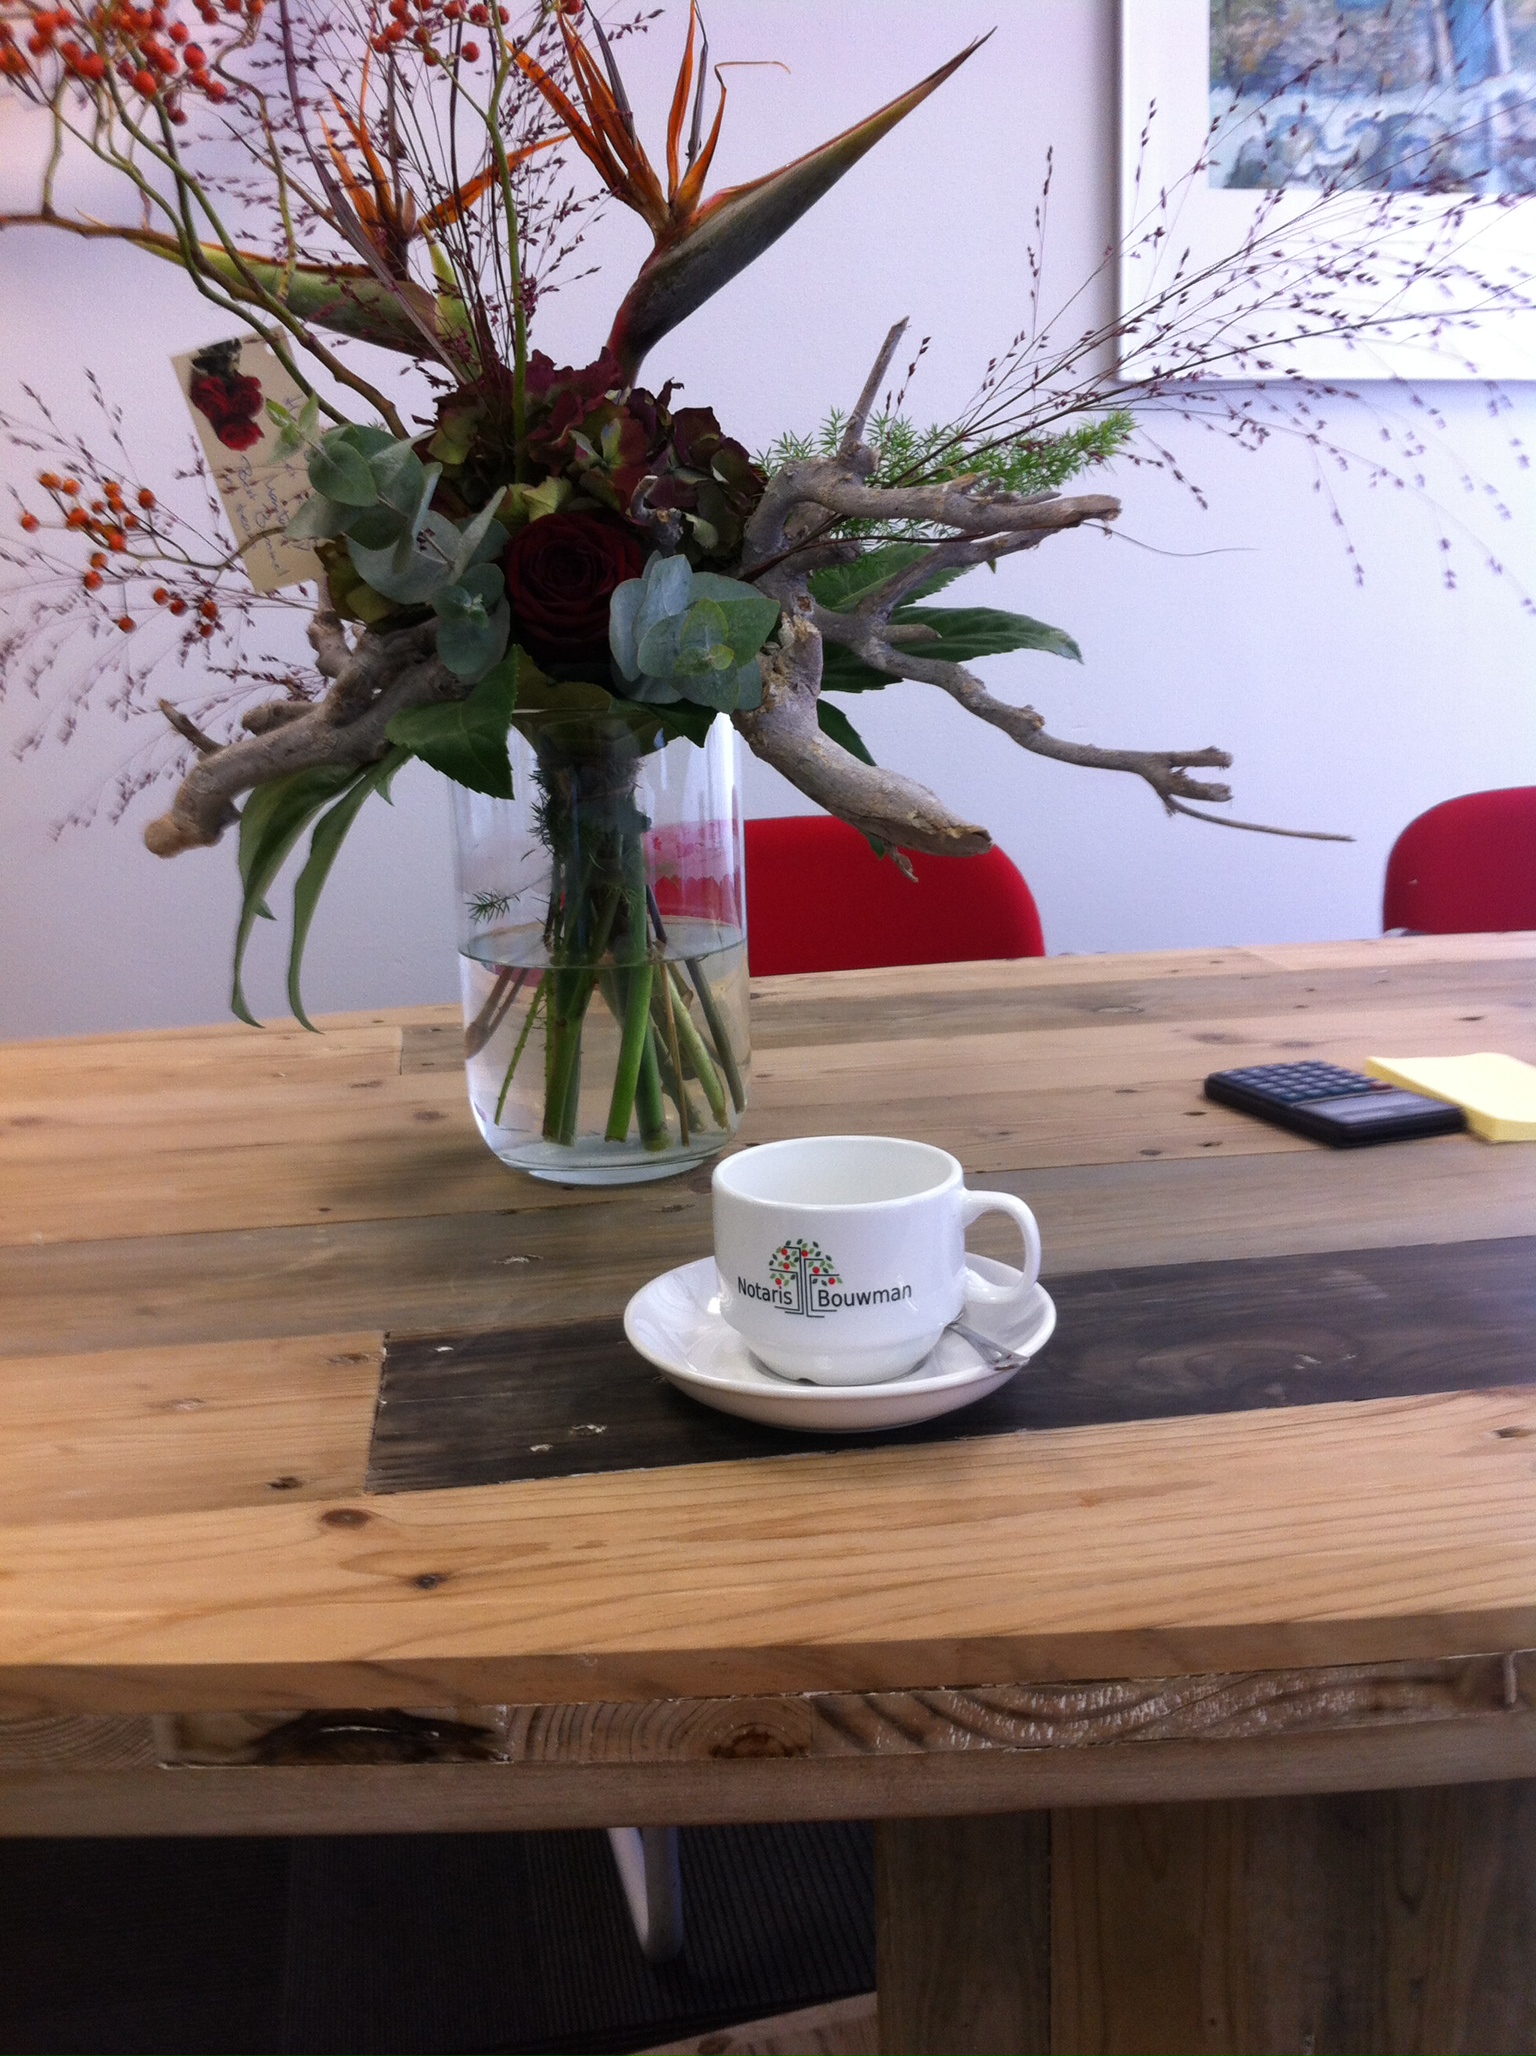 foto van een koffiekopje van notaris bouwman op een houten tafel achter het kopje staat een bouquet